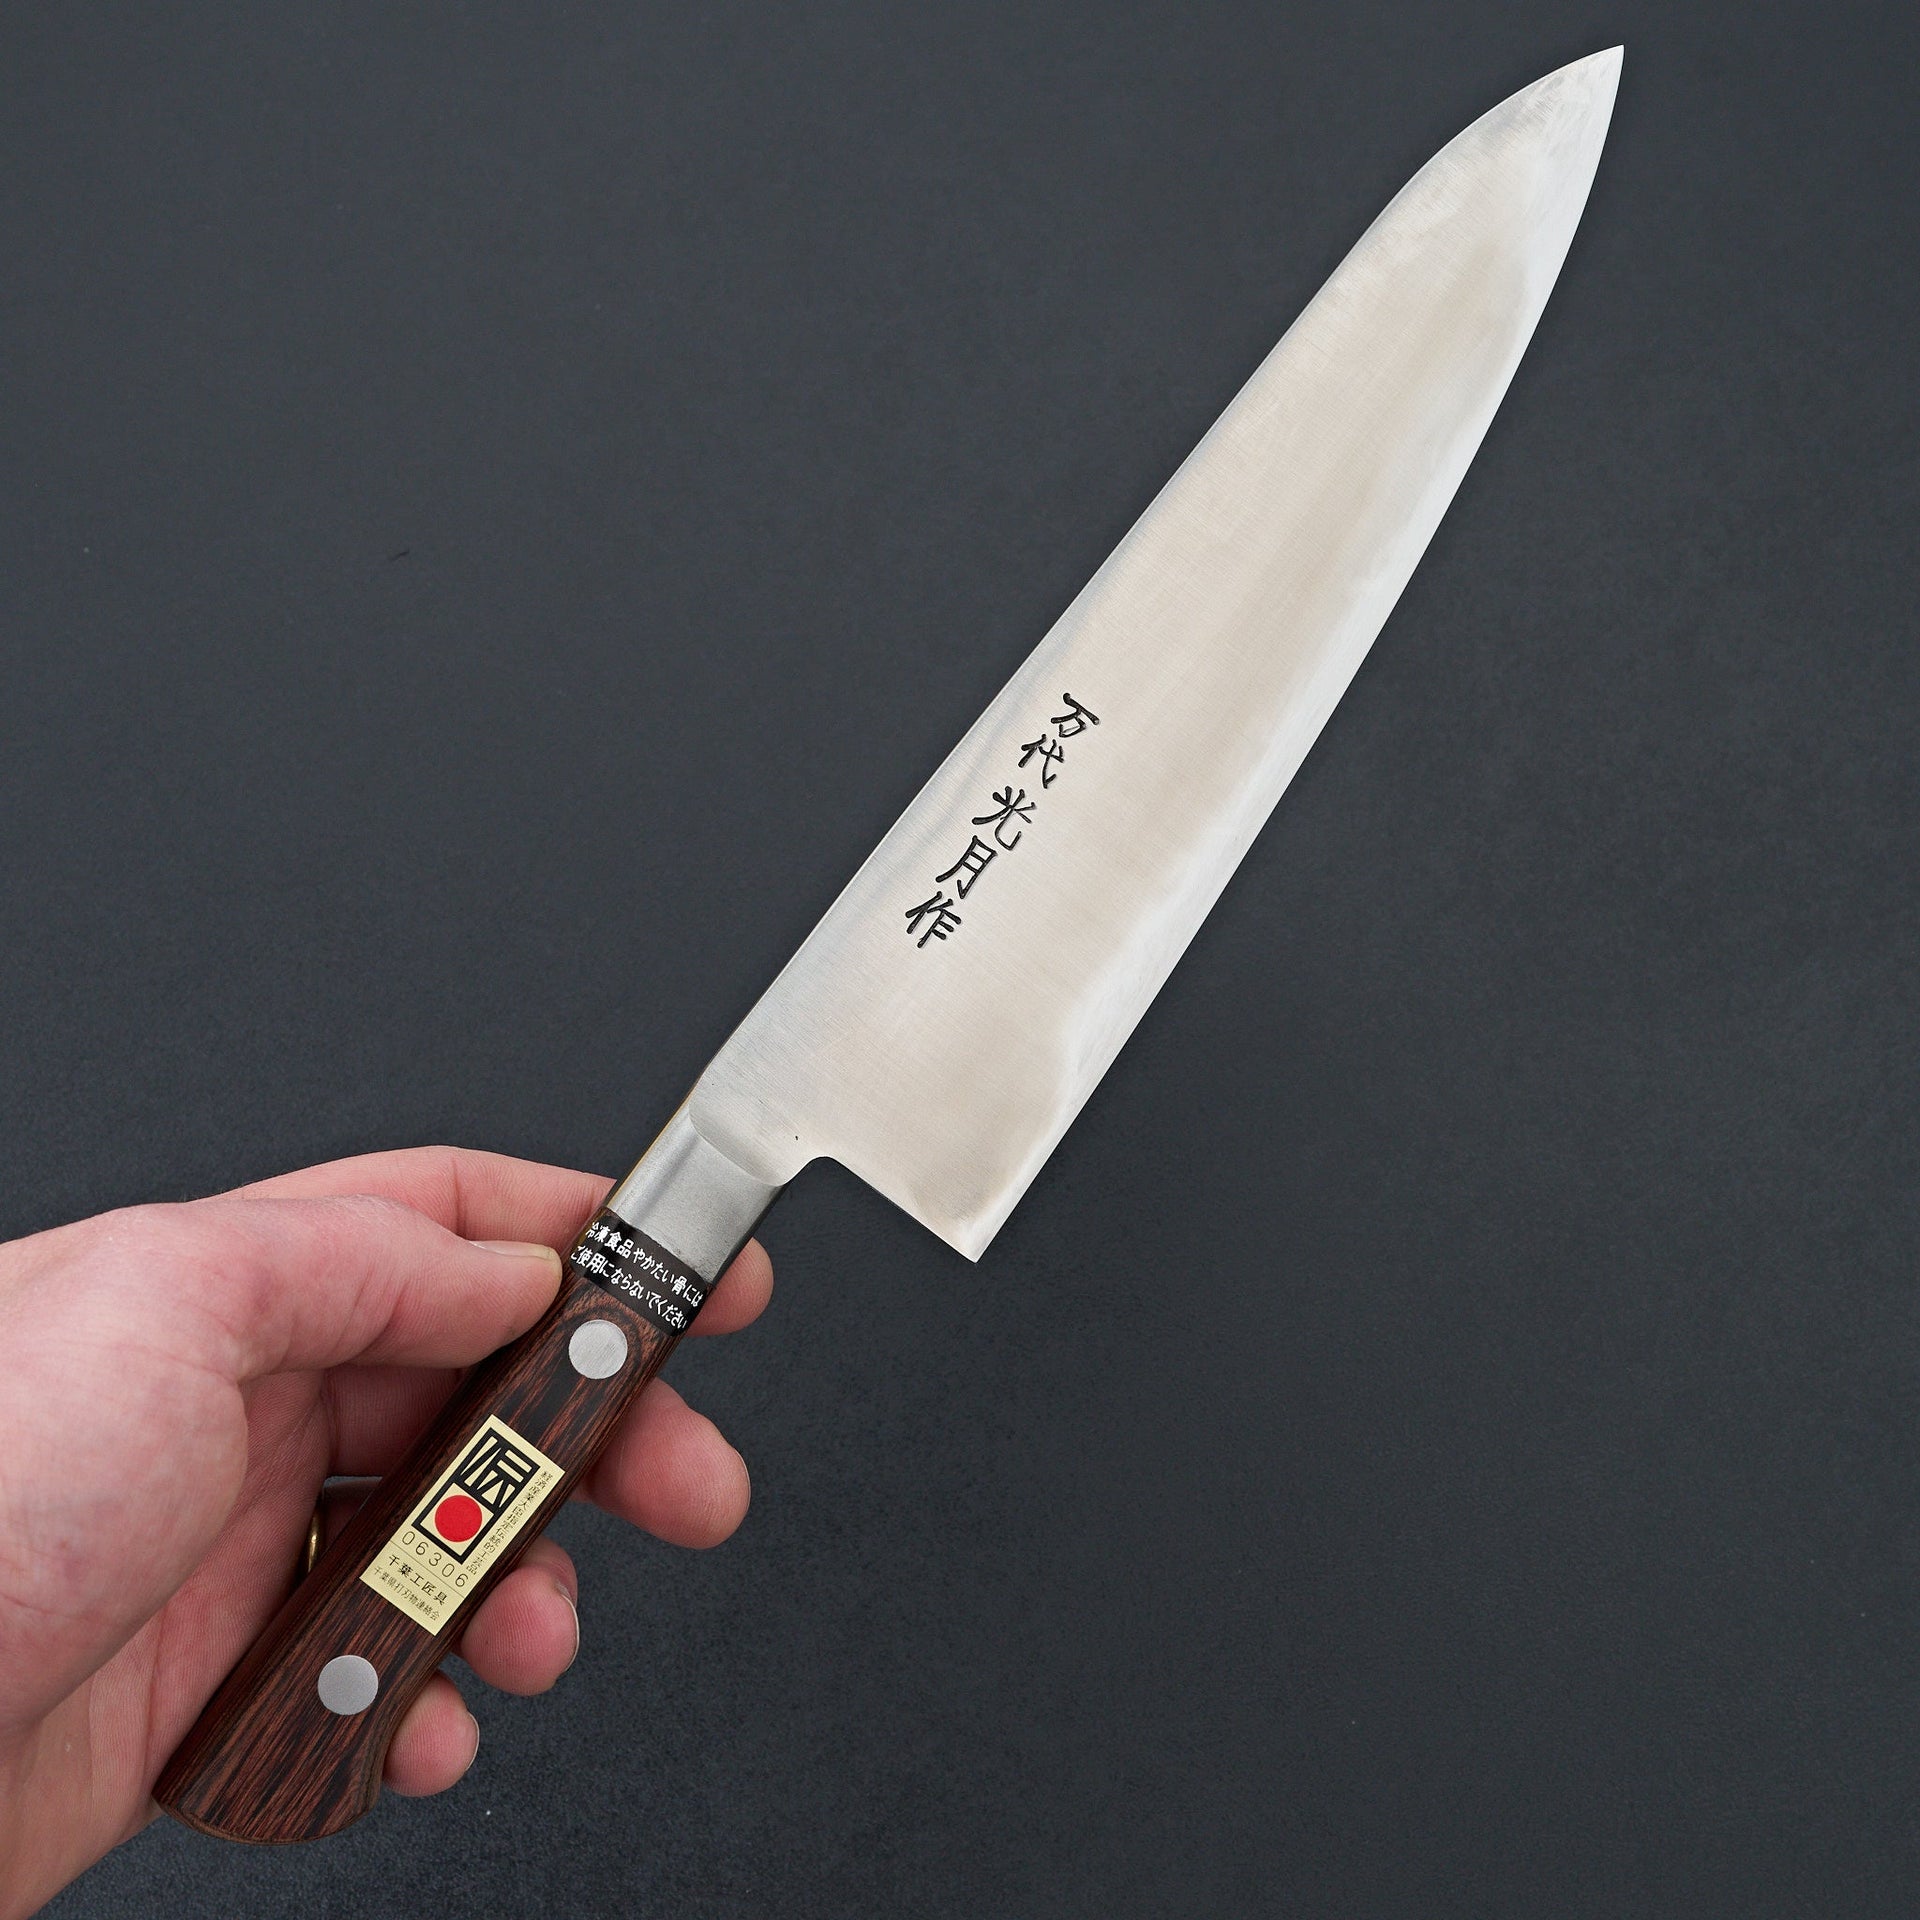 Kogetsu Mandai Stainless Gyuto 210mm Imitation Mahogany Handle-Knife-Kogetsu-Carbon Knife Co